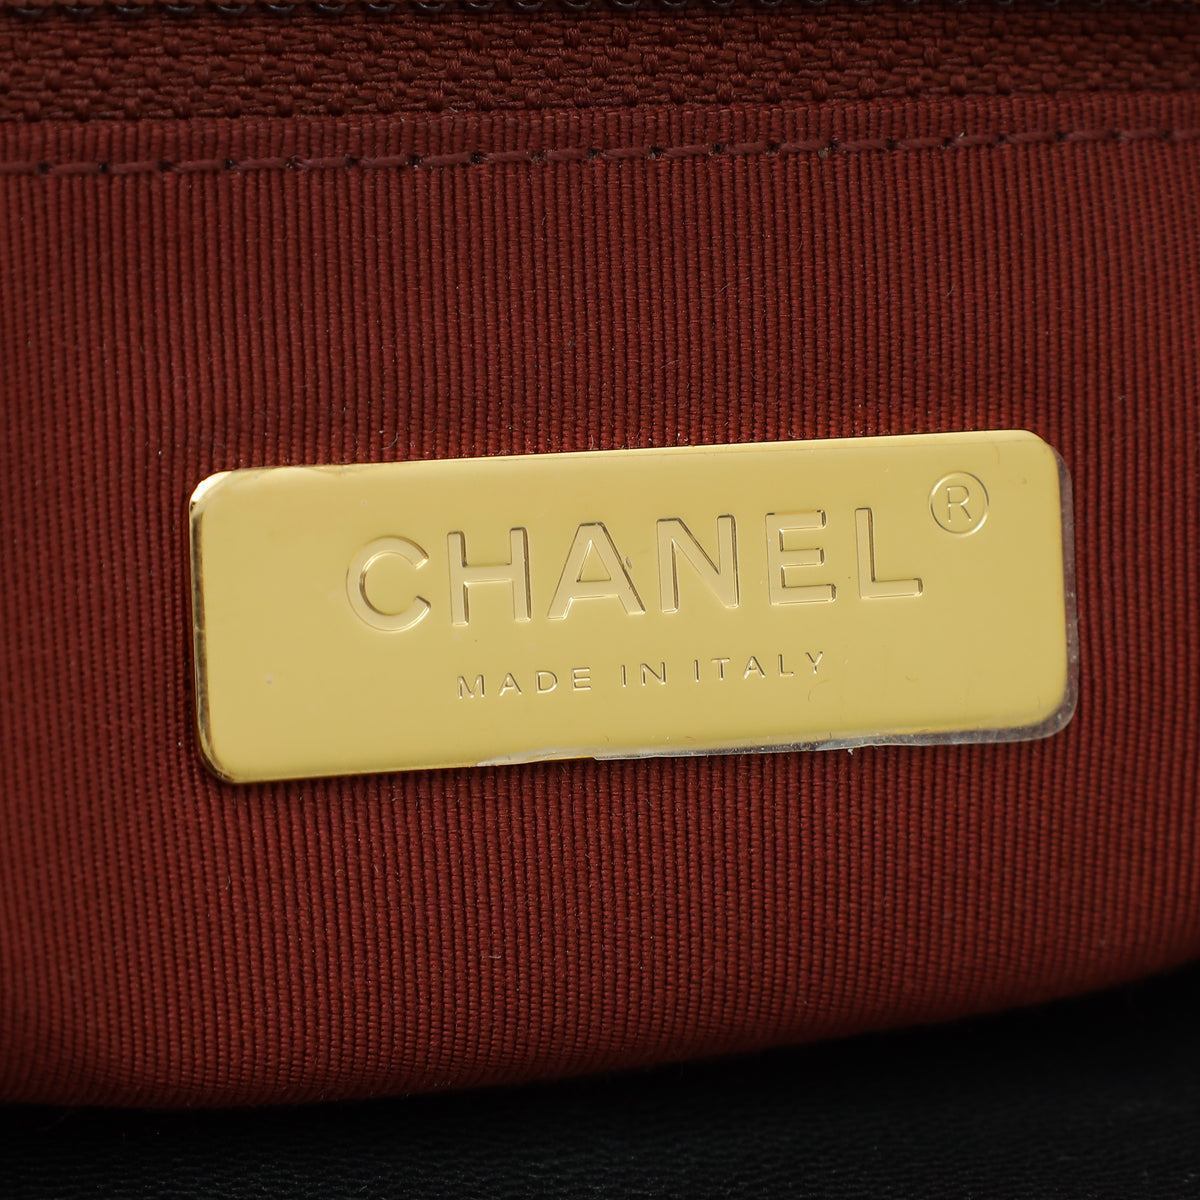 Chanel Black CC 19 Maxi Flap Bag